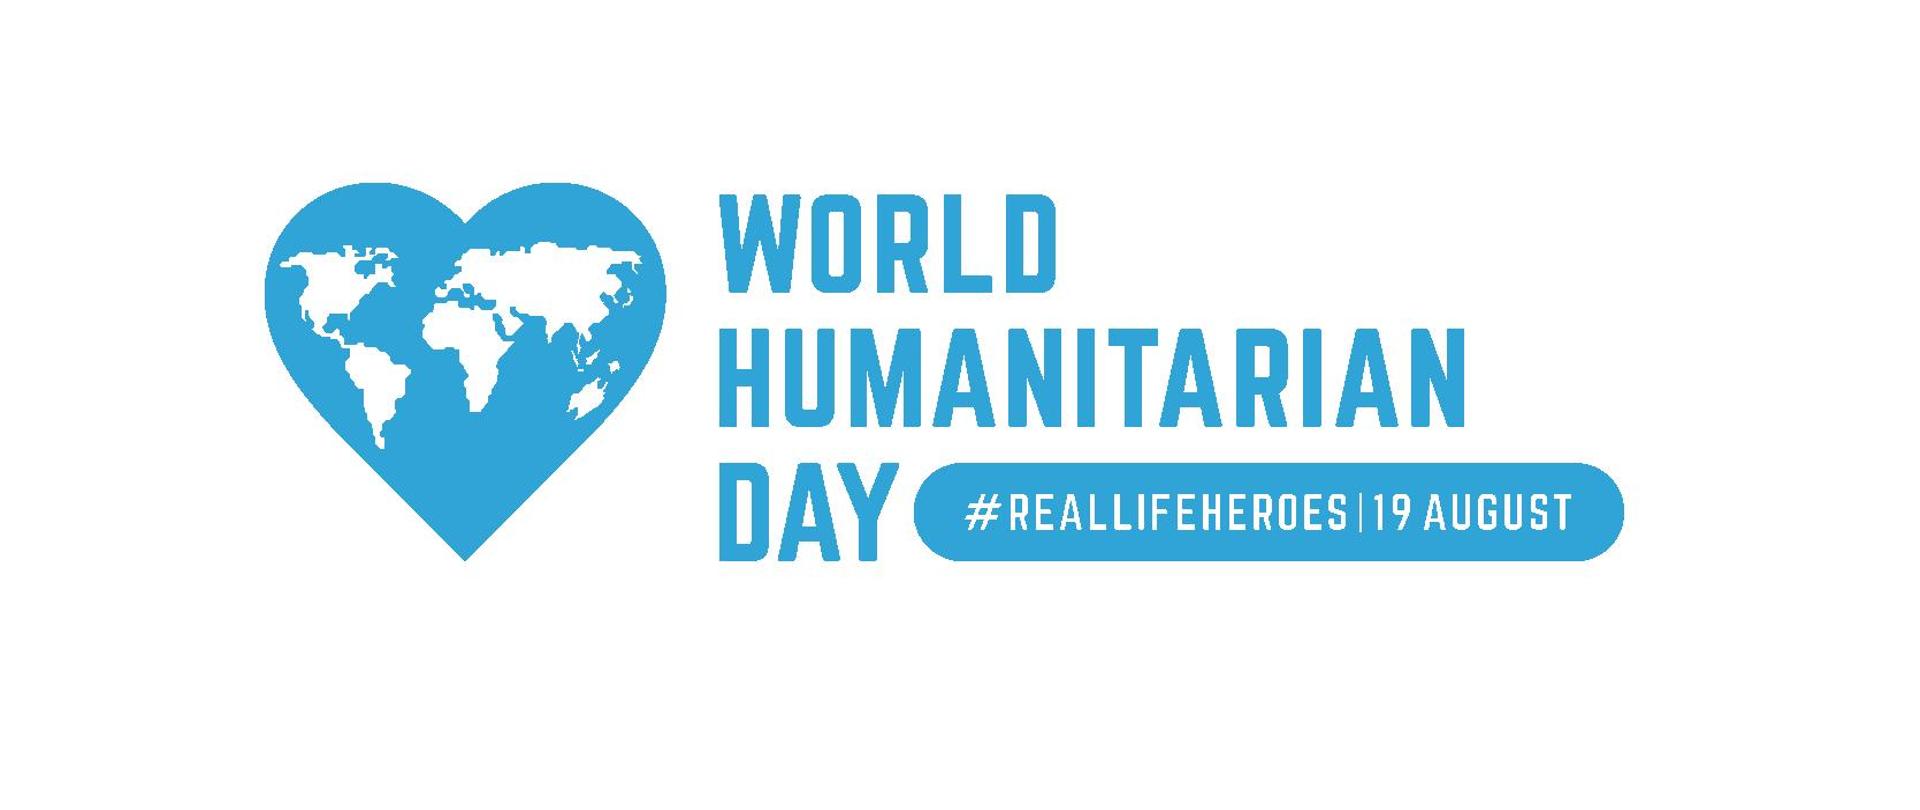 logo Światowego Dnia Pomocy Humanitarnej - mapa świata wpisana w serce z napisem Real Life Heroes 19 August